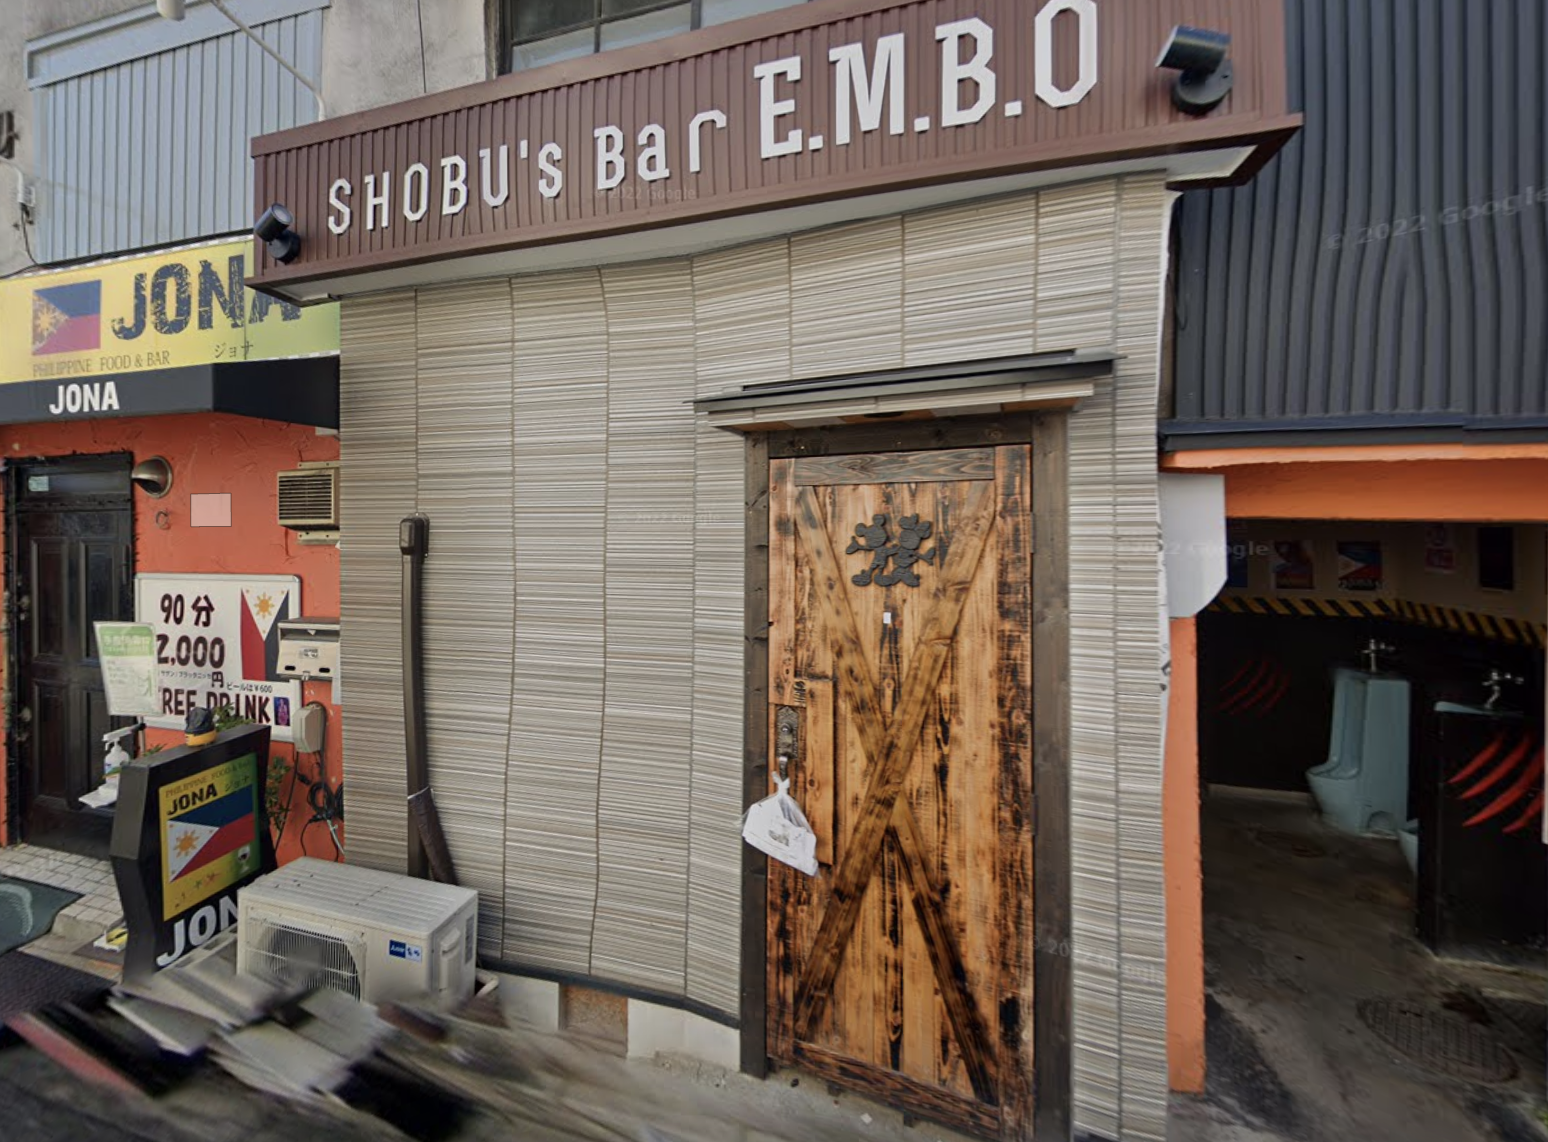 一宮キャバクラおすすめ20選　第16位　SHOUBU's Bar E .M .B.O